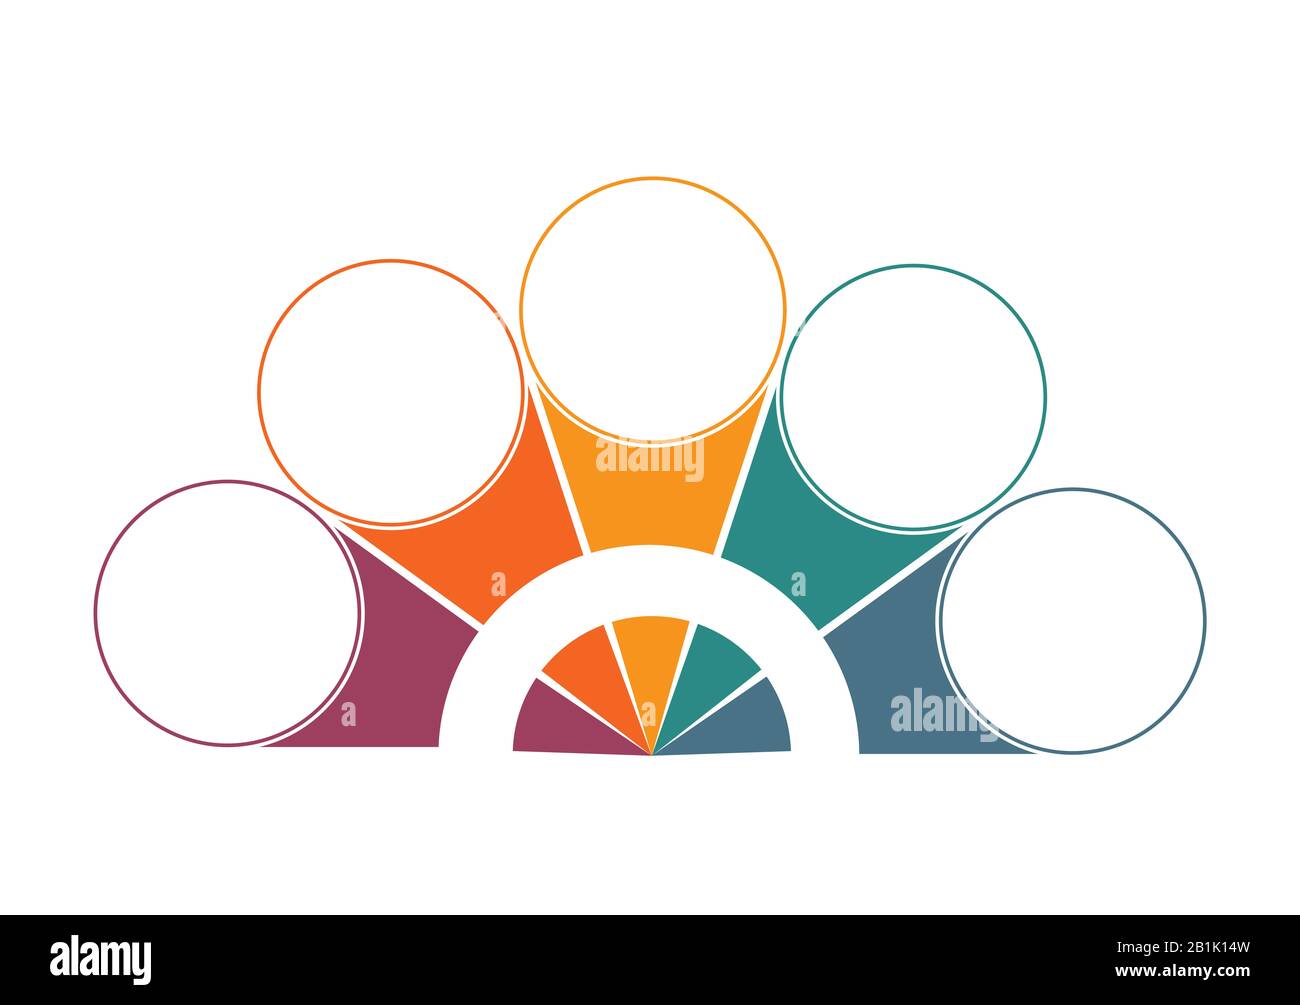 Bunte Halbkreise und Kreise für 5 Positionen. Vorlage für Infografiken in Farbe Stockfoto